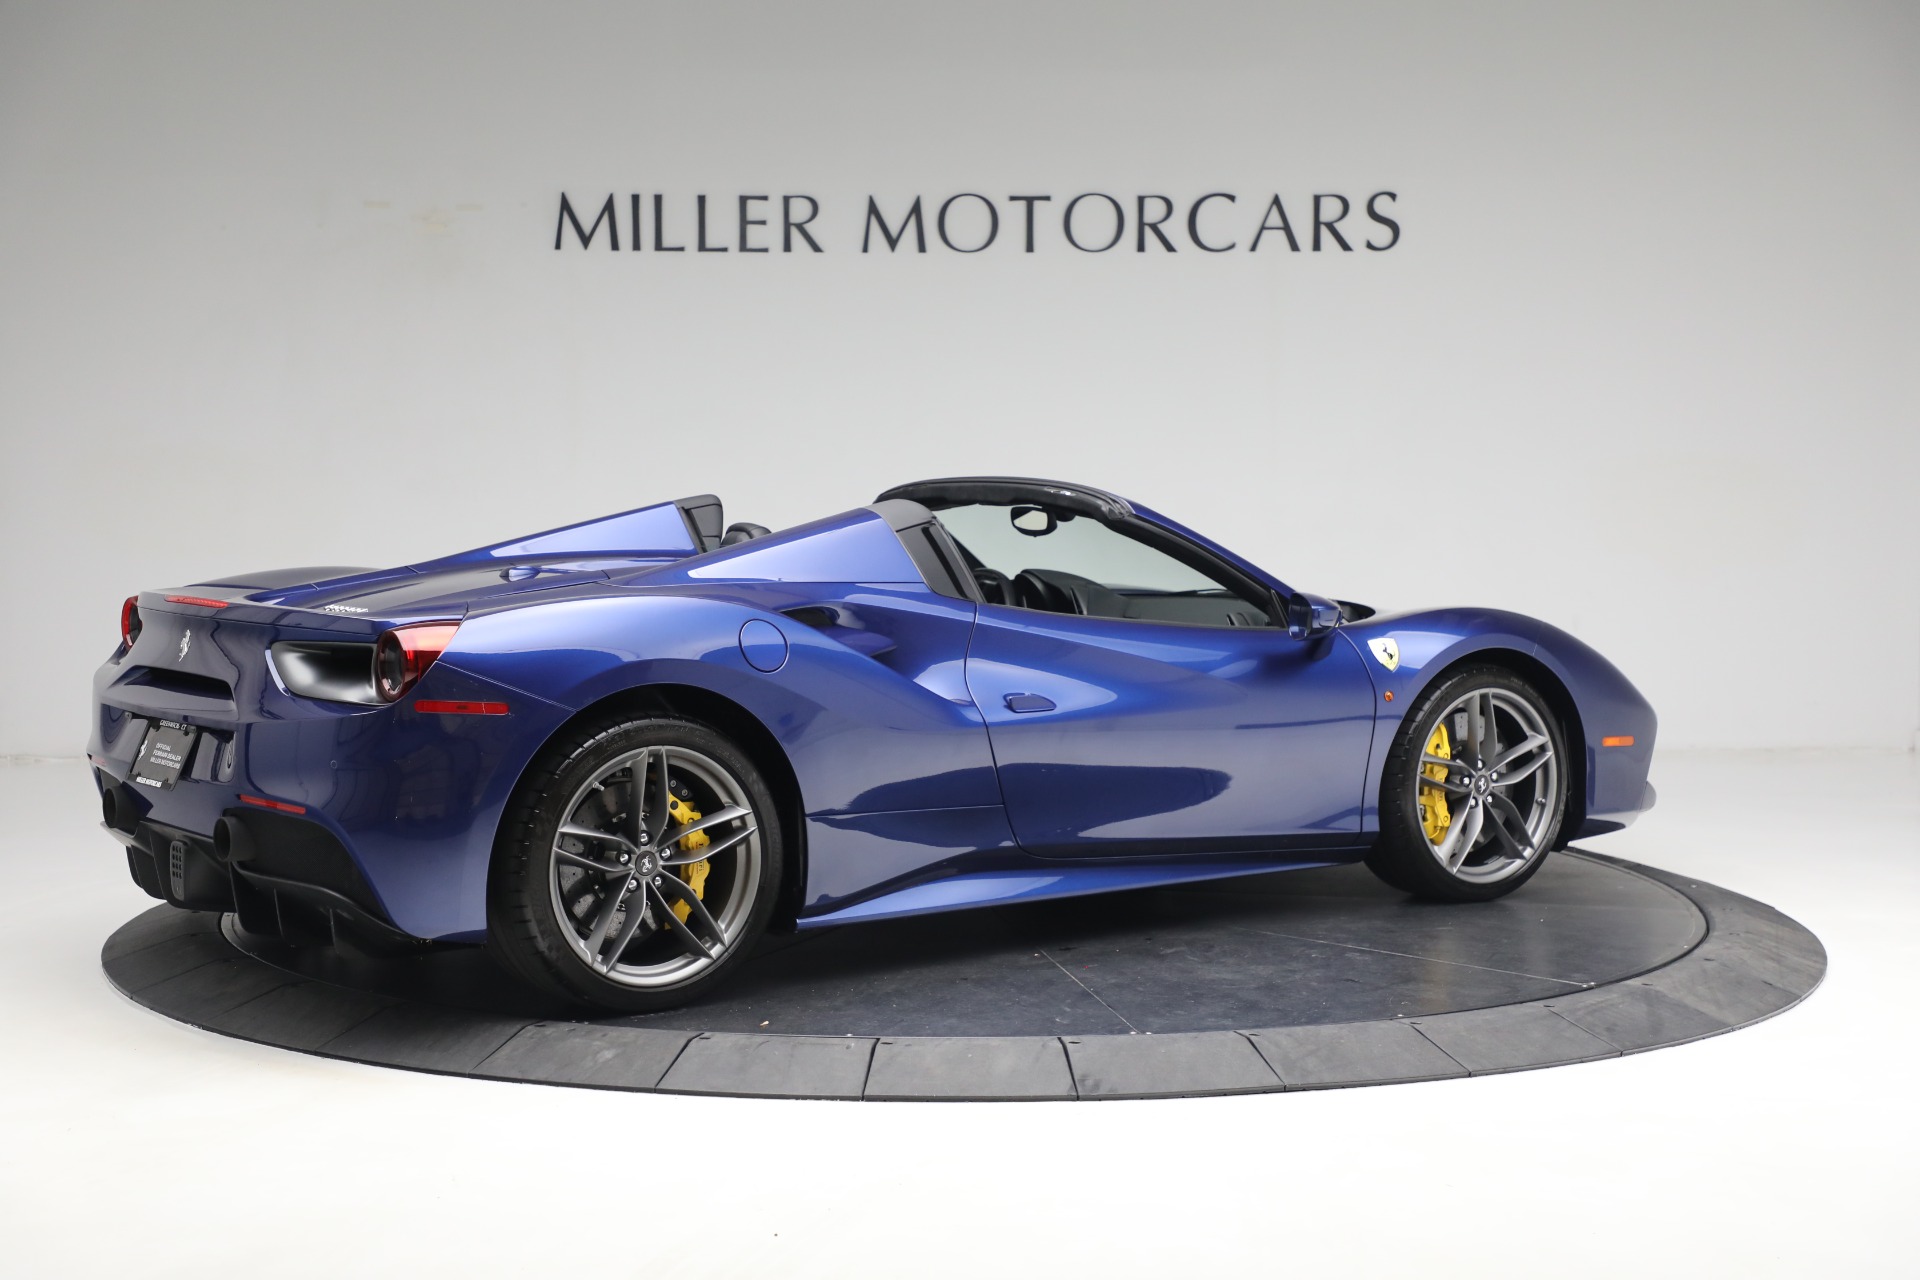 Pre-Owned 2019 Ferrari 488 Spider For Sale () | Miller Motorcars Stock #4608